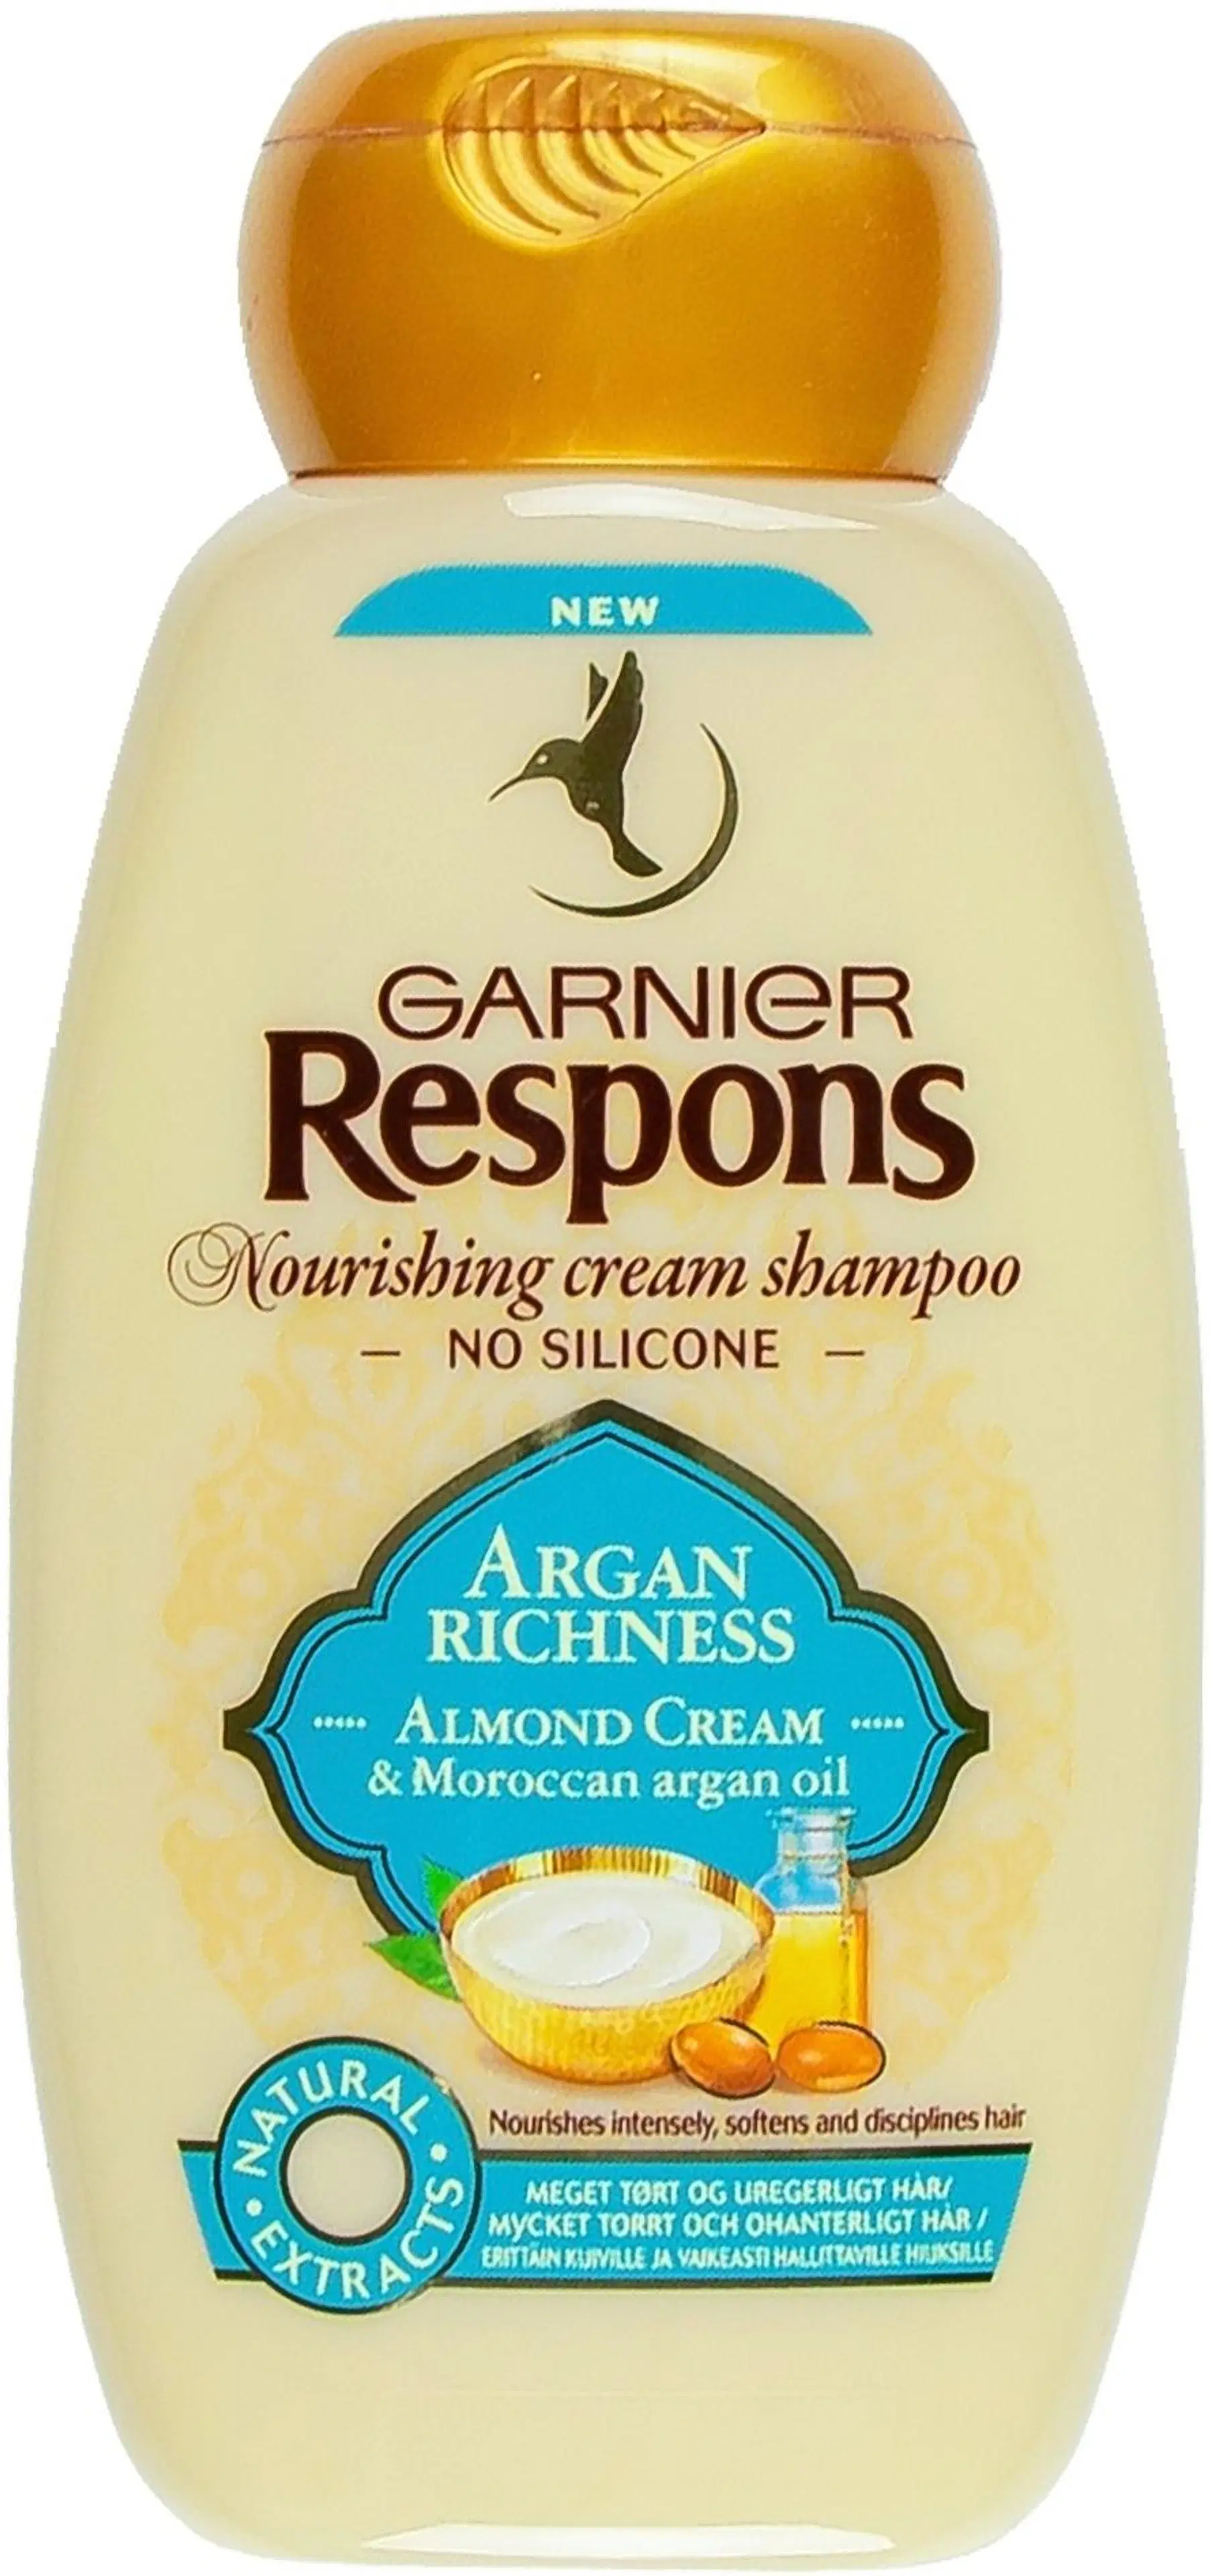 Garnier Respons Argan Richness shampoo erittäin kuiville ja vaikeasti hallittaville hiuksille 250ml